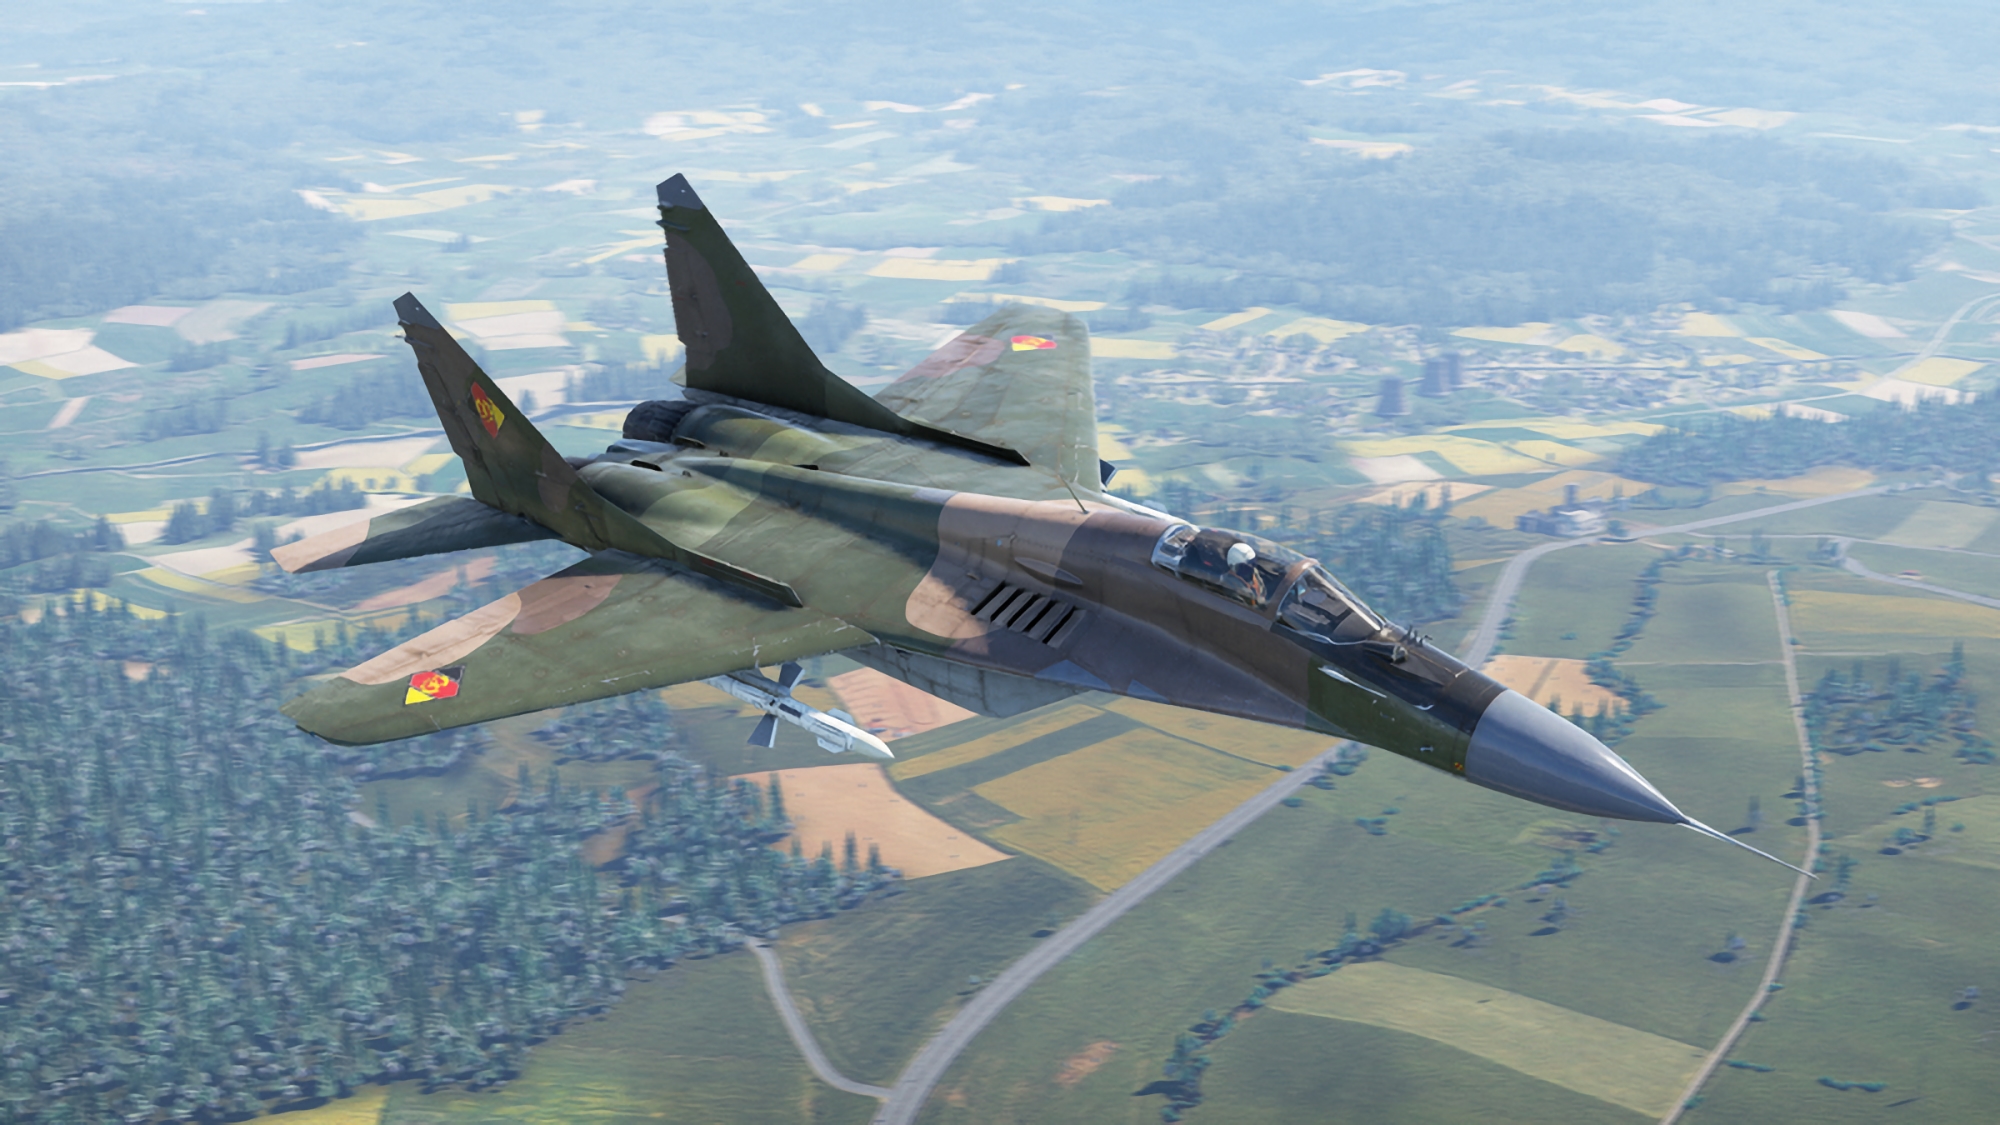 Niemcy pozwalają Polsce na przekazanie 5 myśliwców MiG-29 ukraińskim siłom zbrojnym